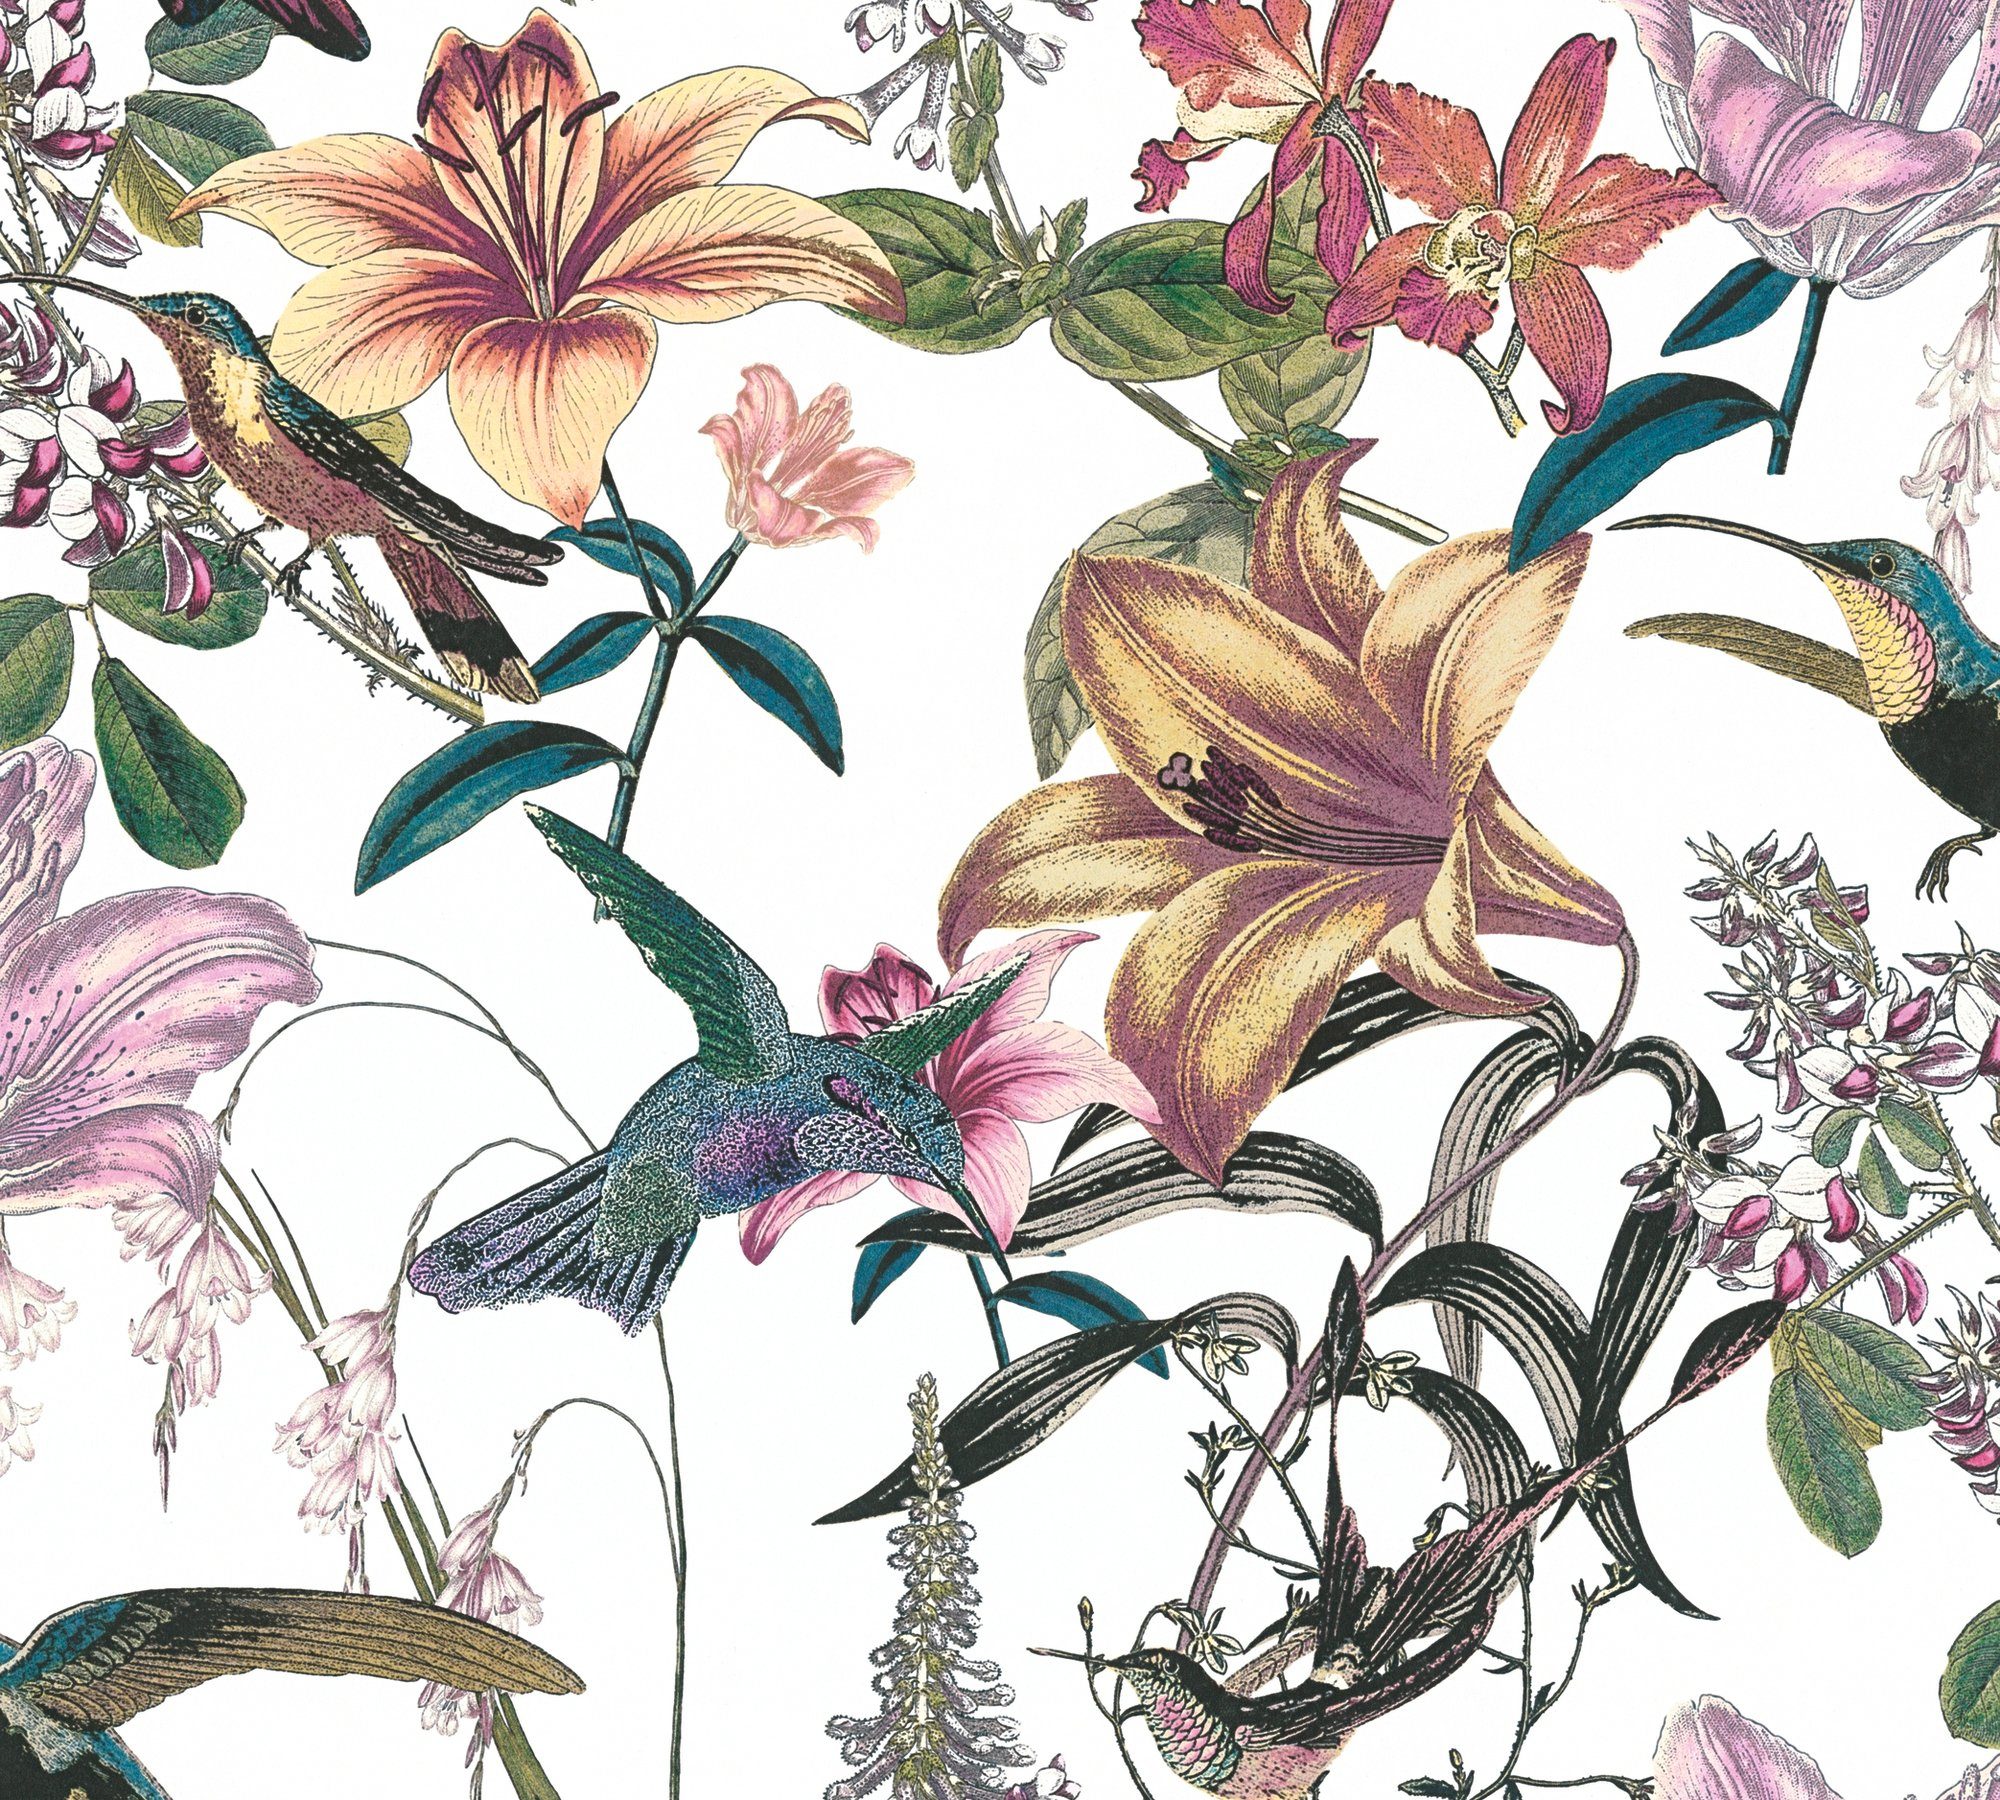 Chic, bunt/grün/gelb Blumen Création Jungle Vogeltapete Architects floral, A.S. botanisch, Vliestapete tropisch, glatt, Paper Tapete